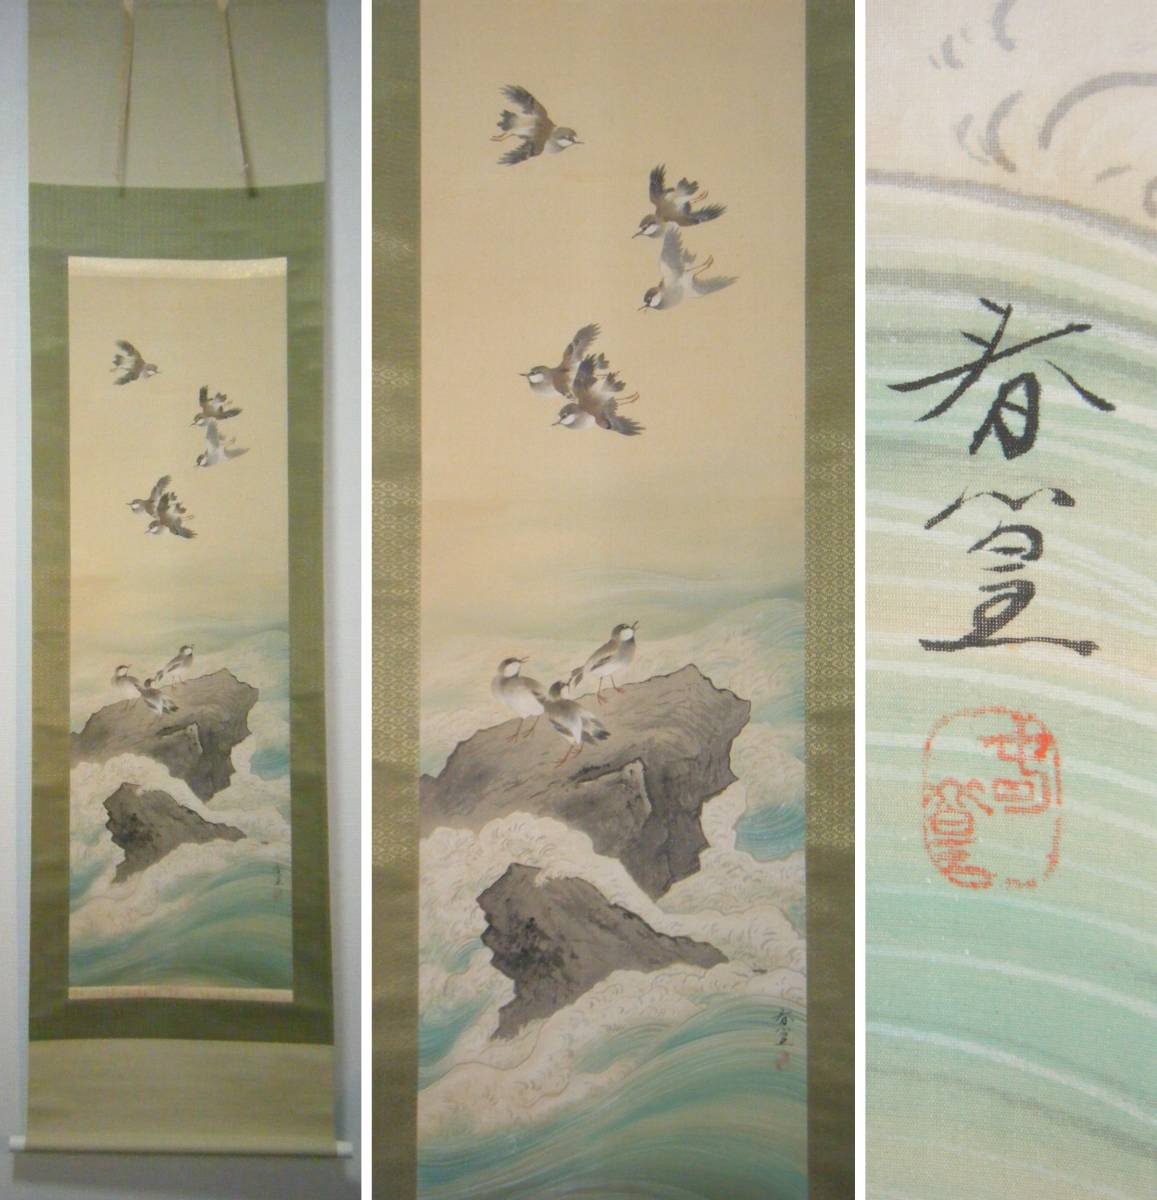 लटकता हुआ स्क्रॉल, शंको हस्ताक्षर, समुद्री चट्टानी पक्षी, कृति, बॉक्सिंग, K11, चित्रकारी, जापानी पेंटिंग, फूल और पक्षी, पक्षी और जानवर